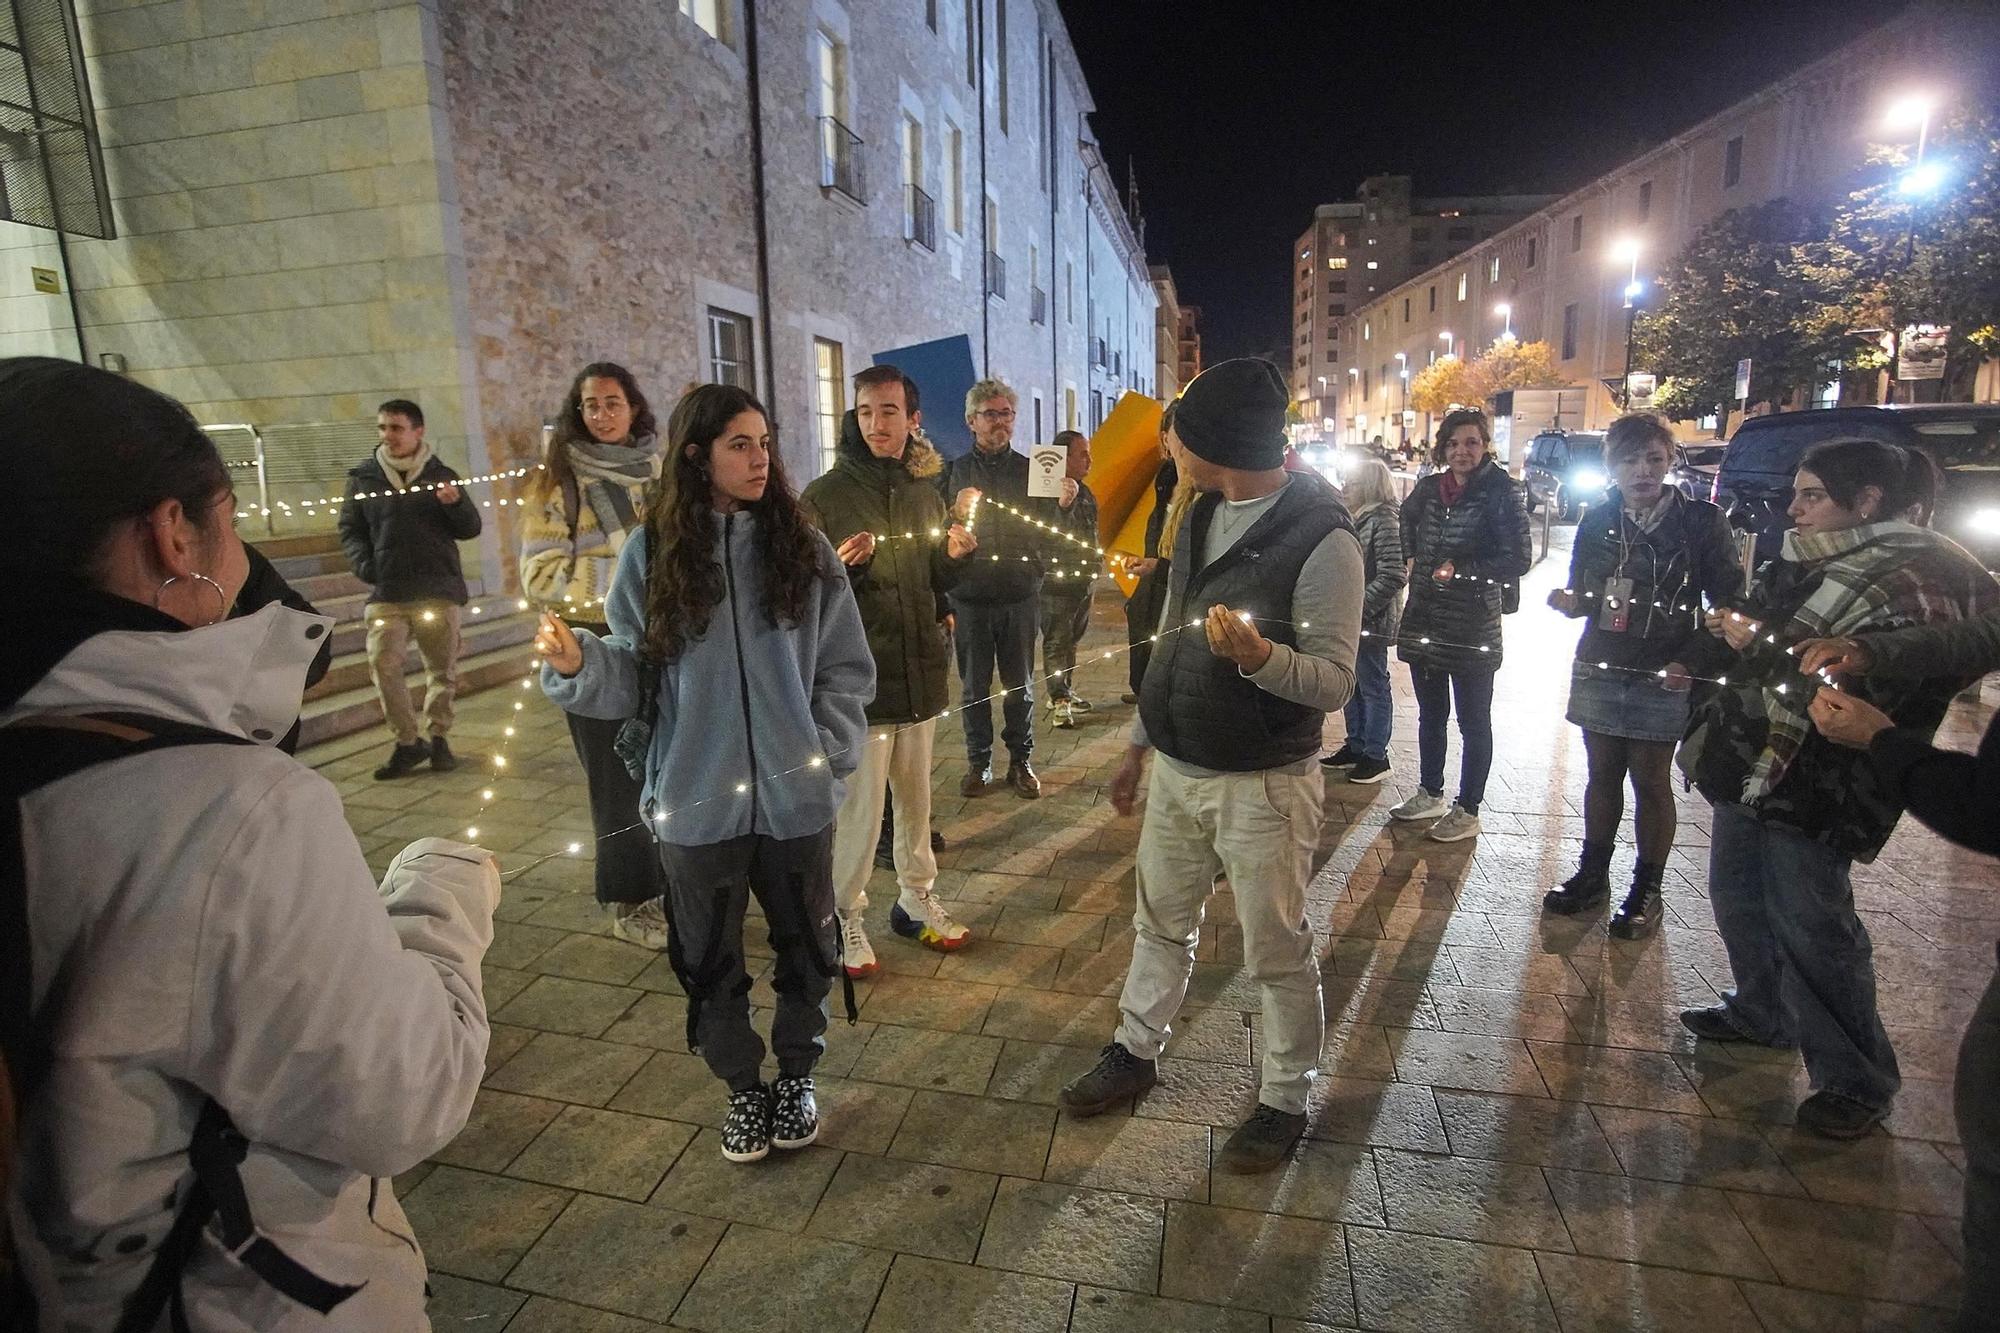 Galeria d'imatges: Flashmob a Girona per les persones sense llar